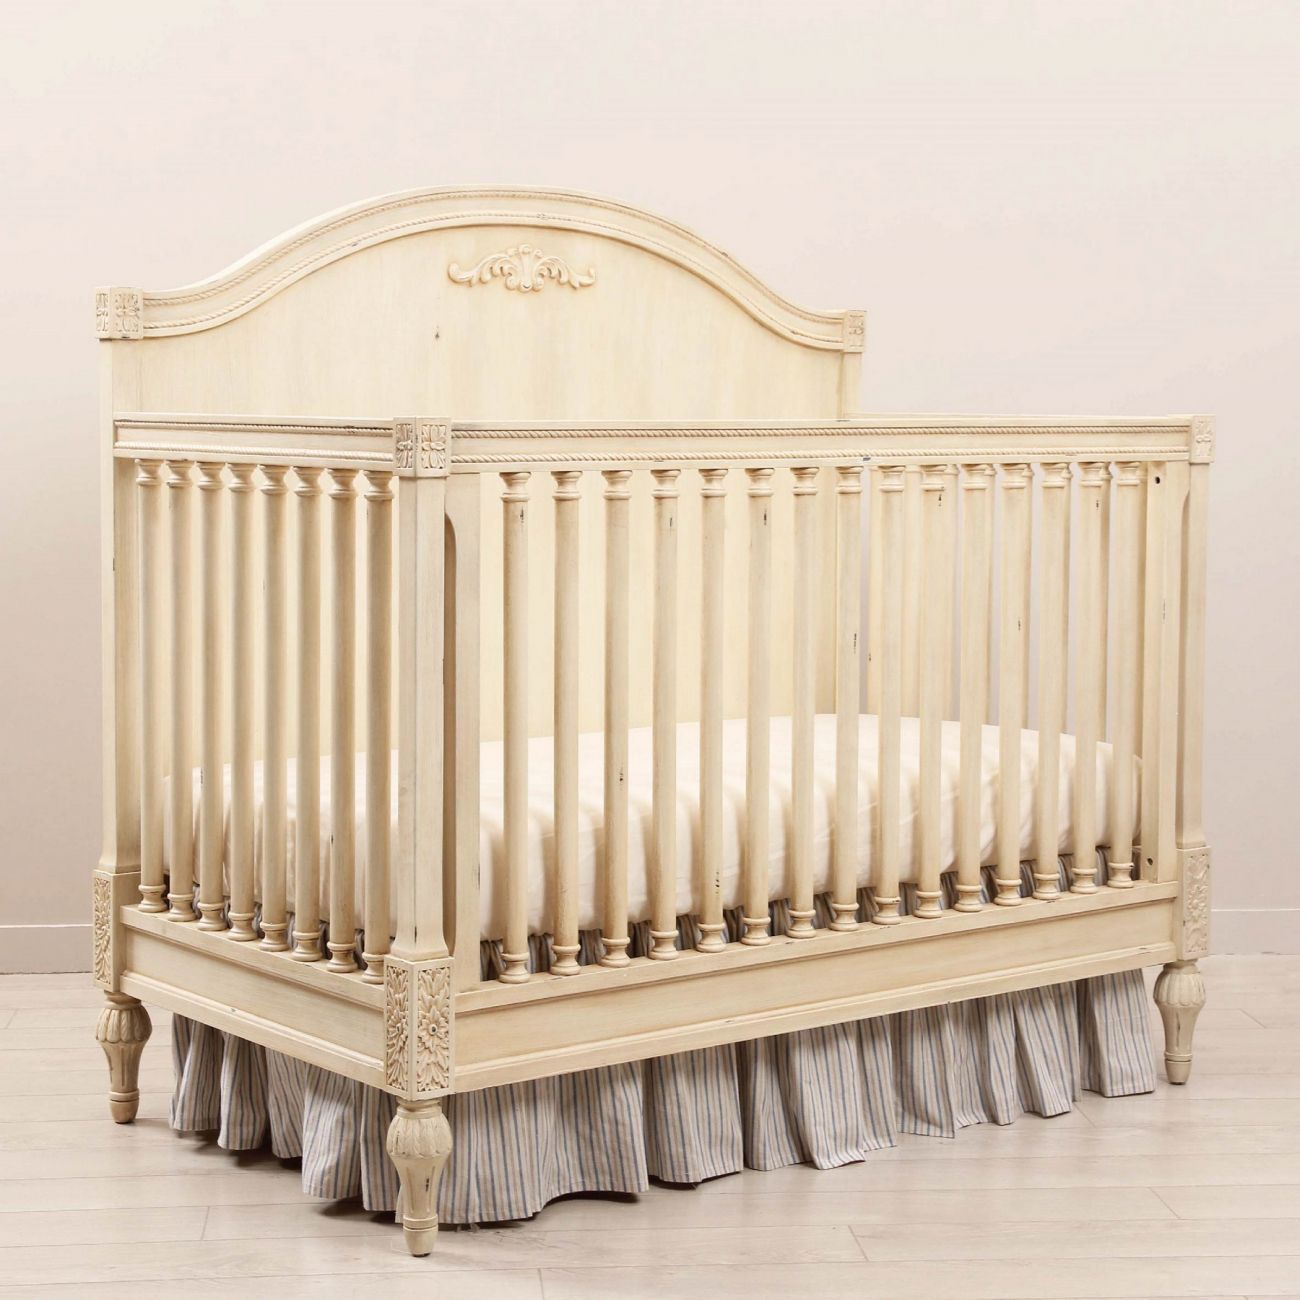 Кровать детская Gracia Белая с матрасом